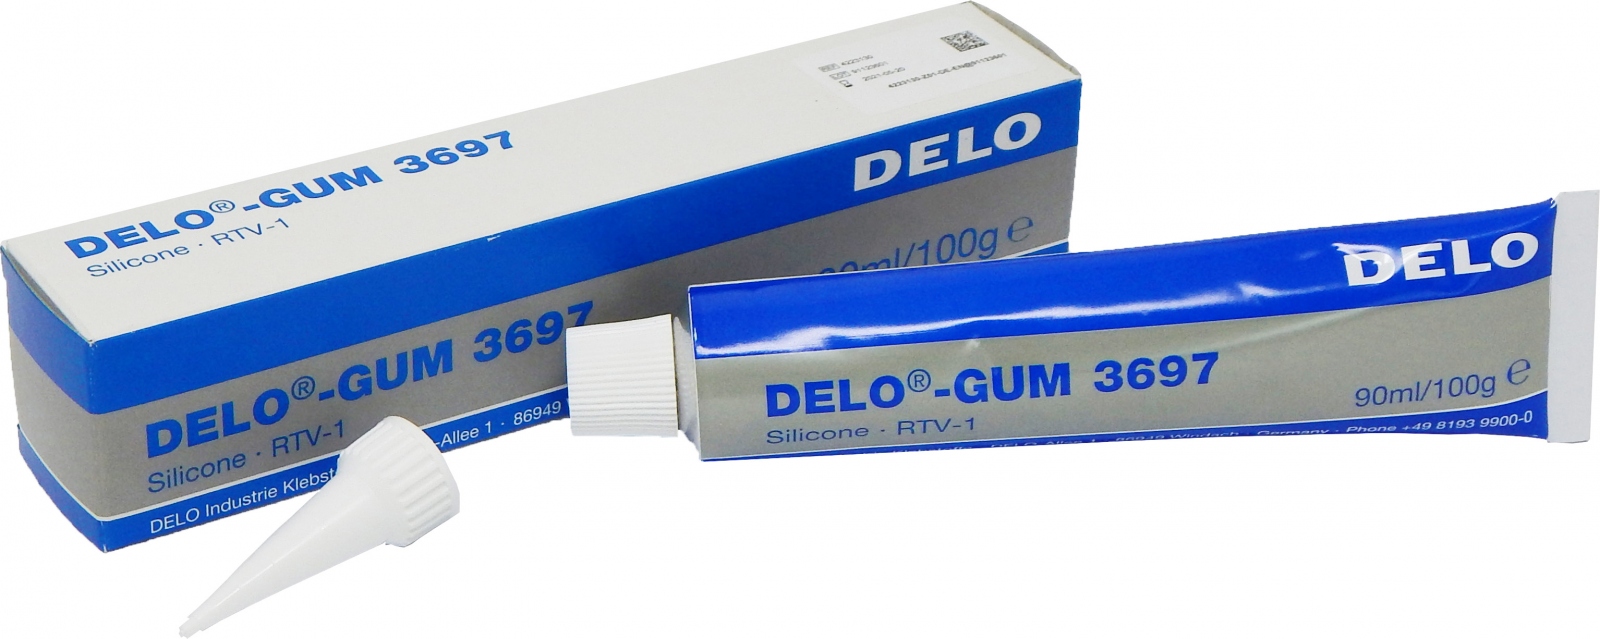 pics/DELO/delo-gum-3697-silicone-glue-100g-tube.jpg